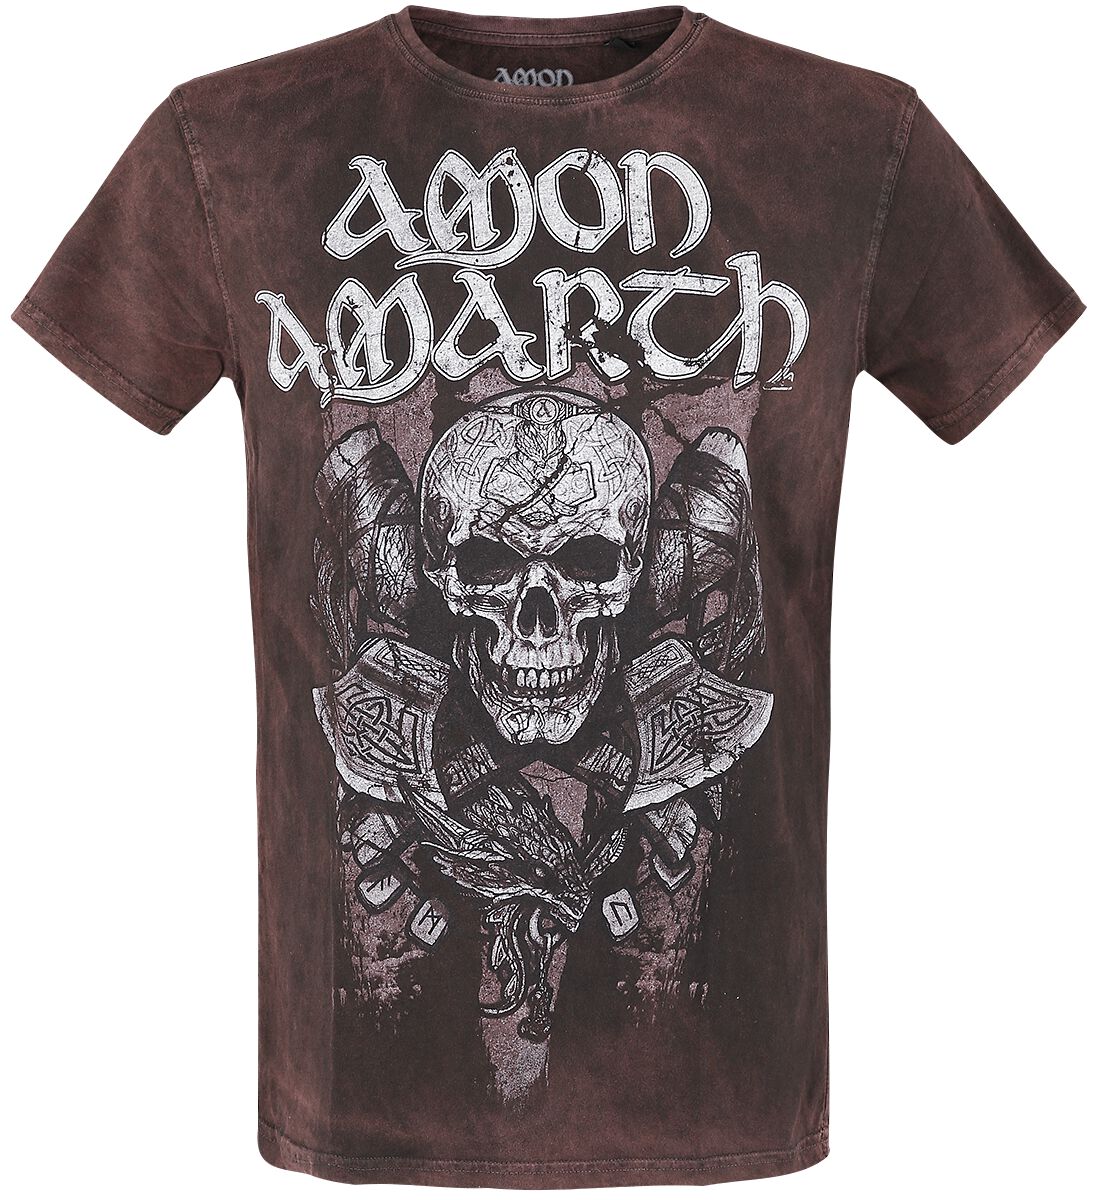 Image of T-Shirt di Amon Amarth - Carved Skull - S a L - Uomo - marrone